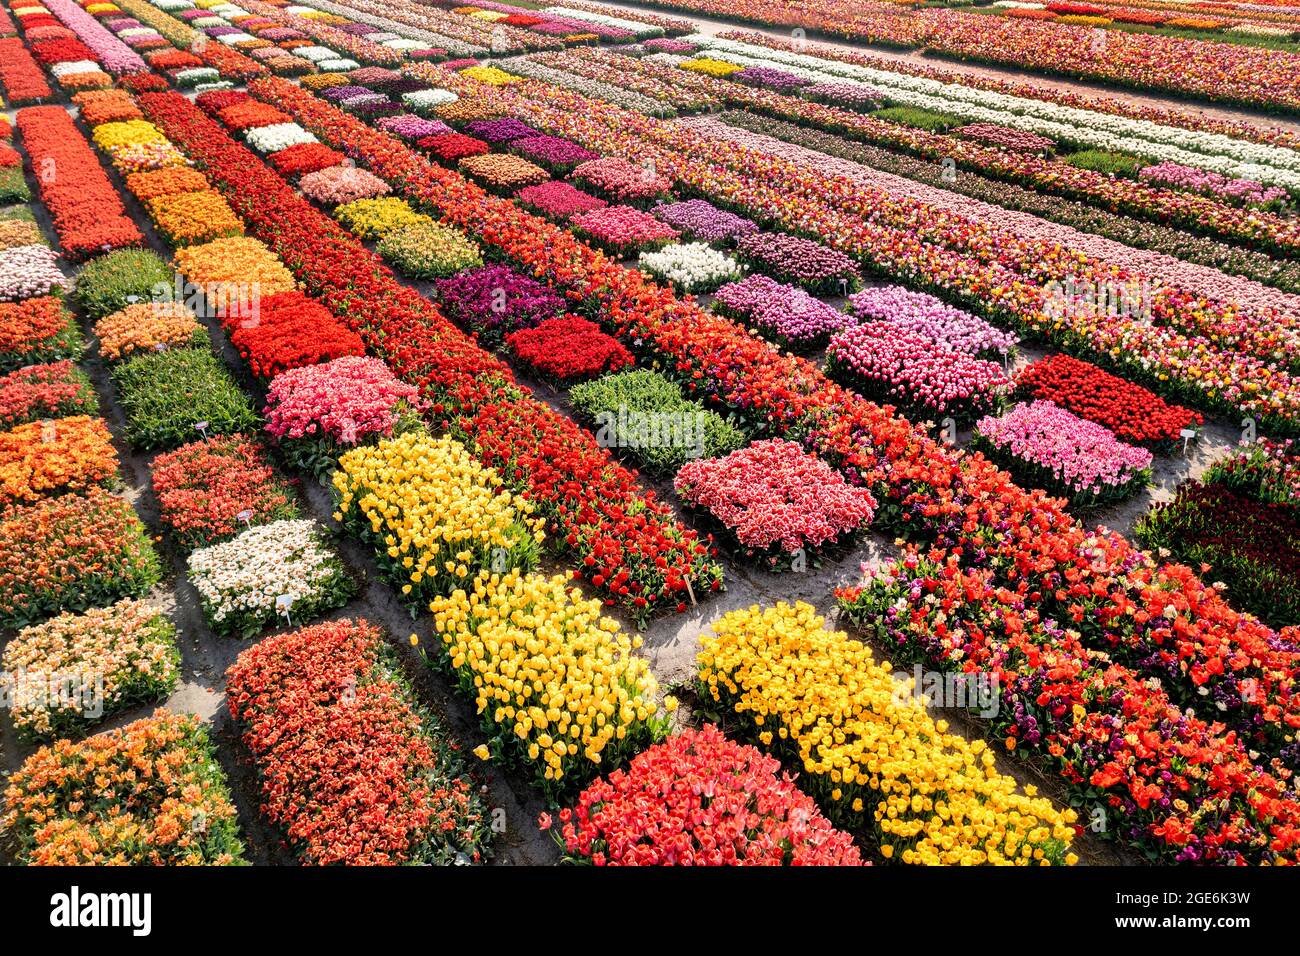 Pays-Bas, Noordwijkerhout, Tulips, champs de tulipes. Antenne. Banque D'Images